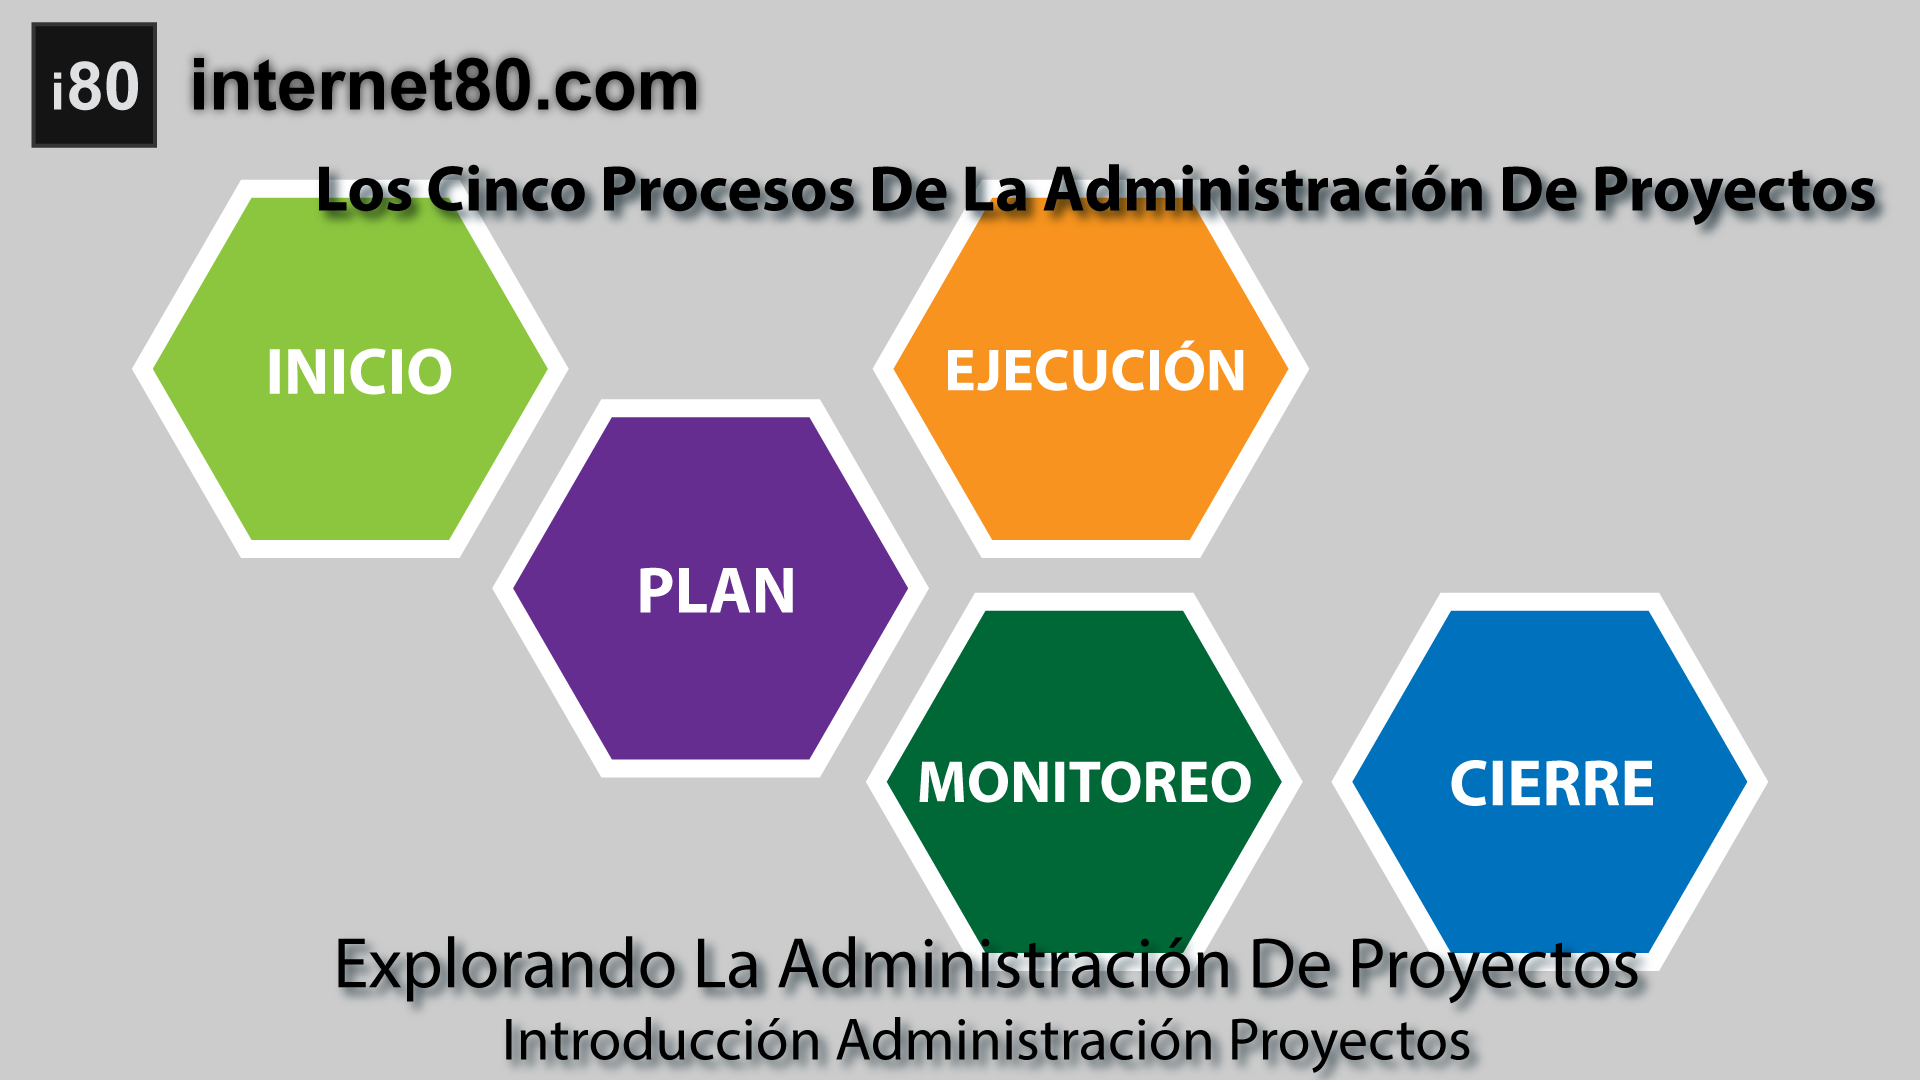 Los Cinco Procesos De La Administración De Proyectos